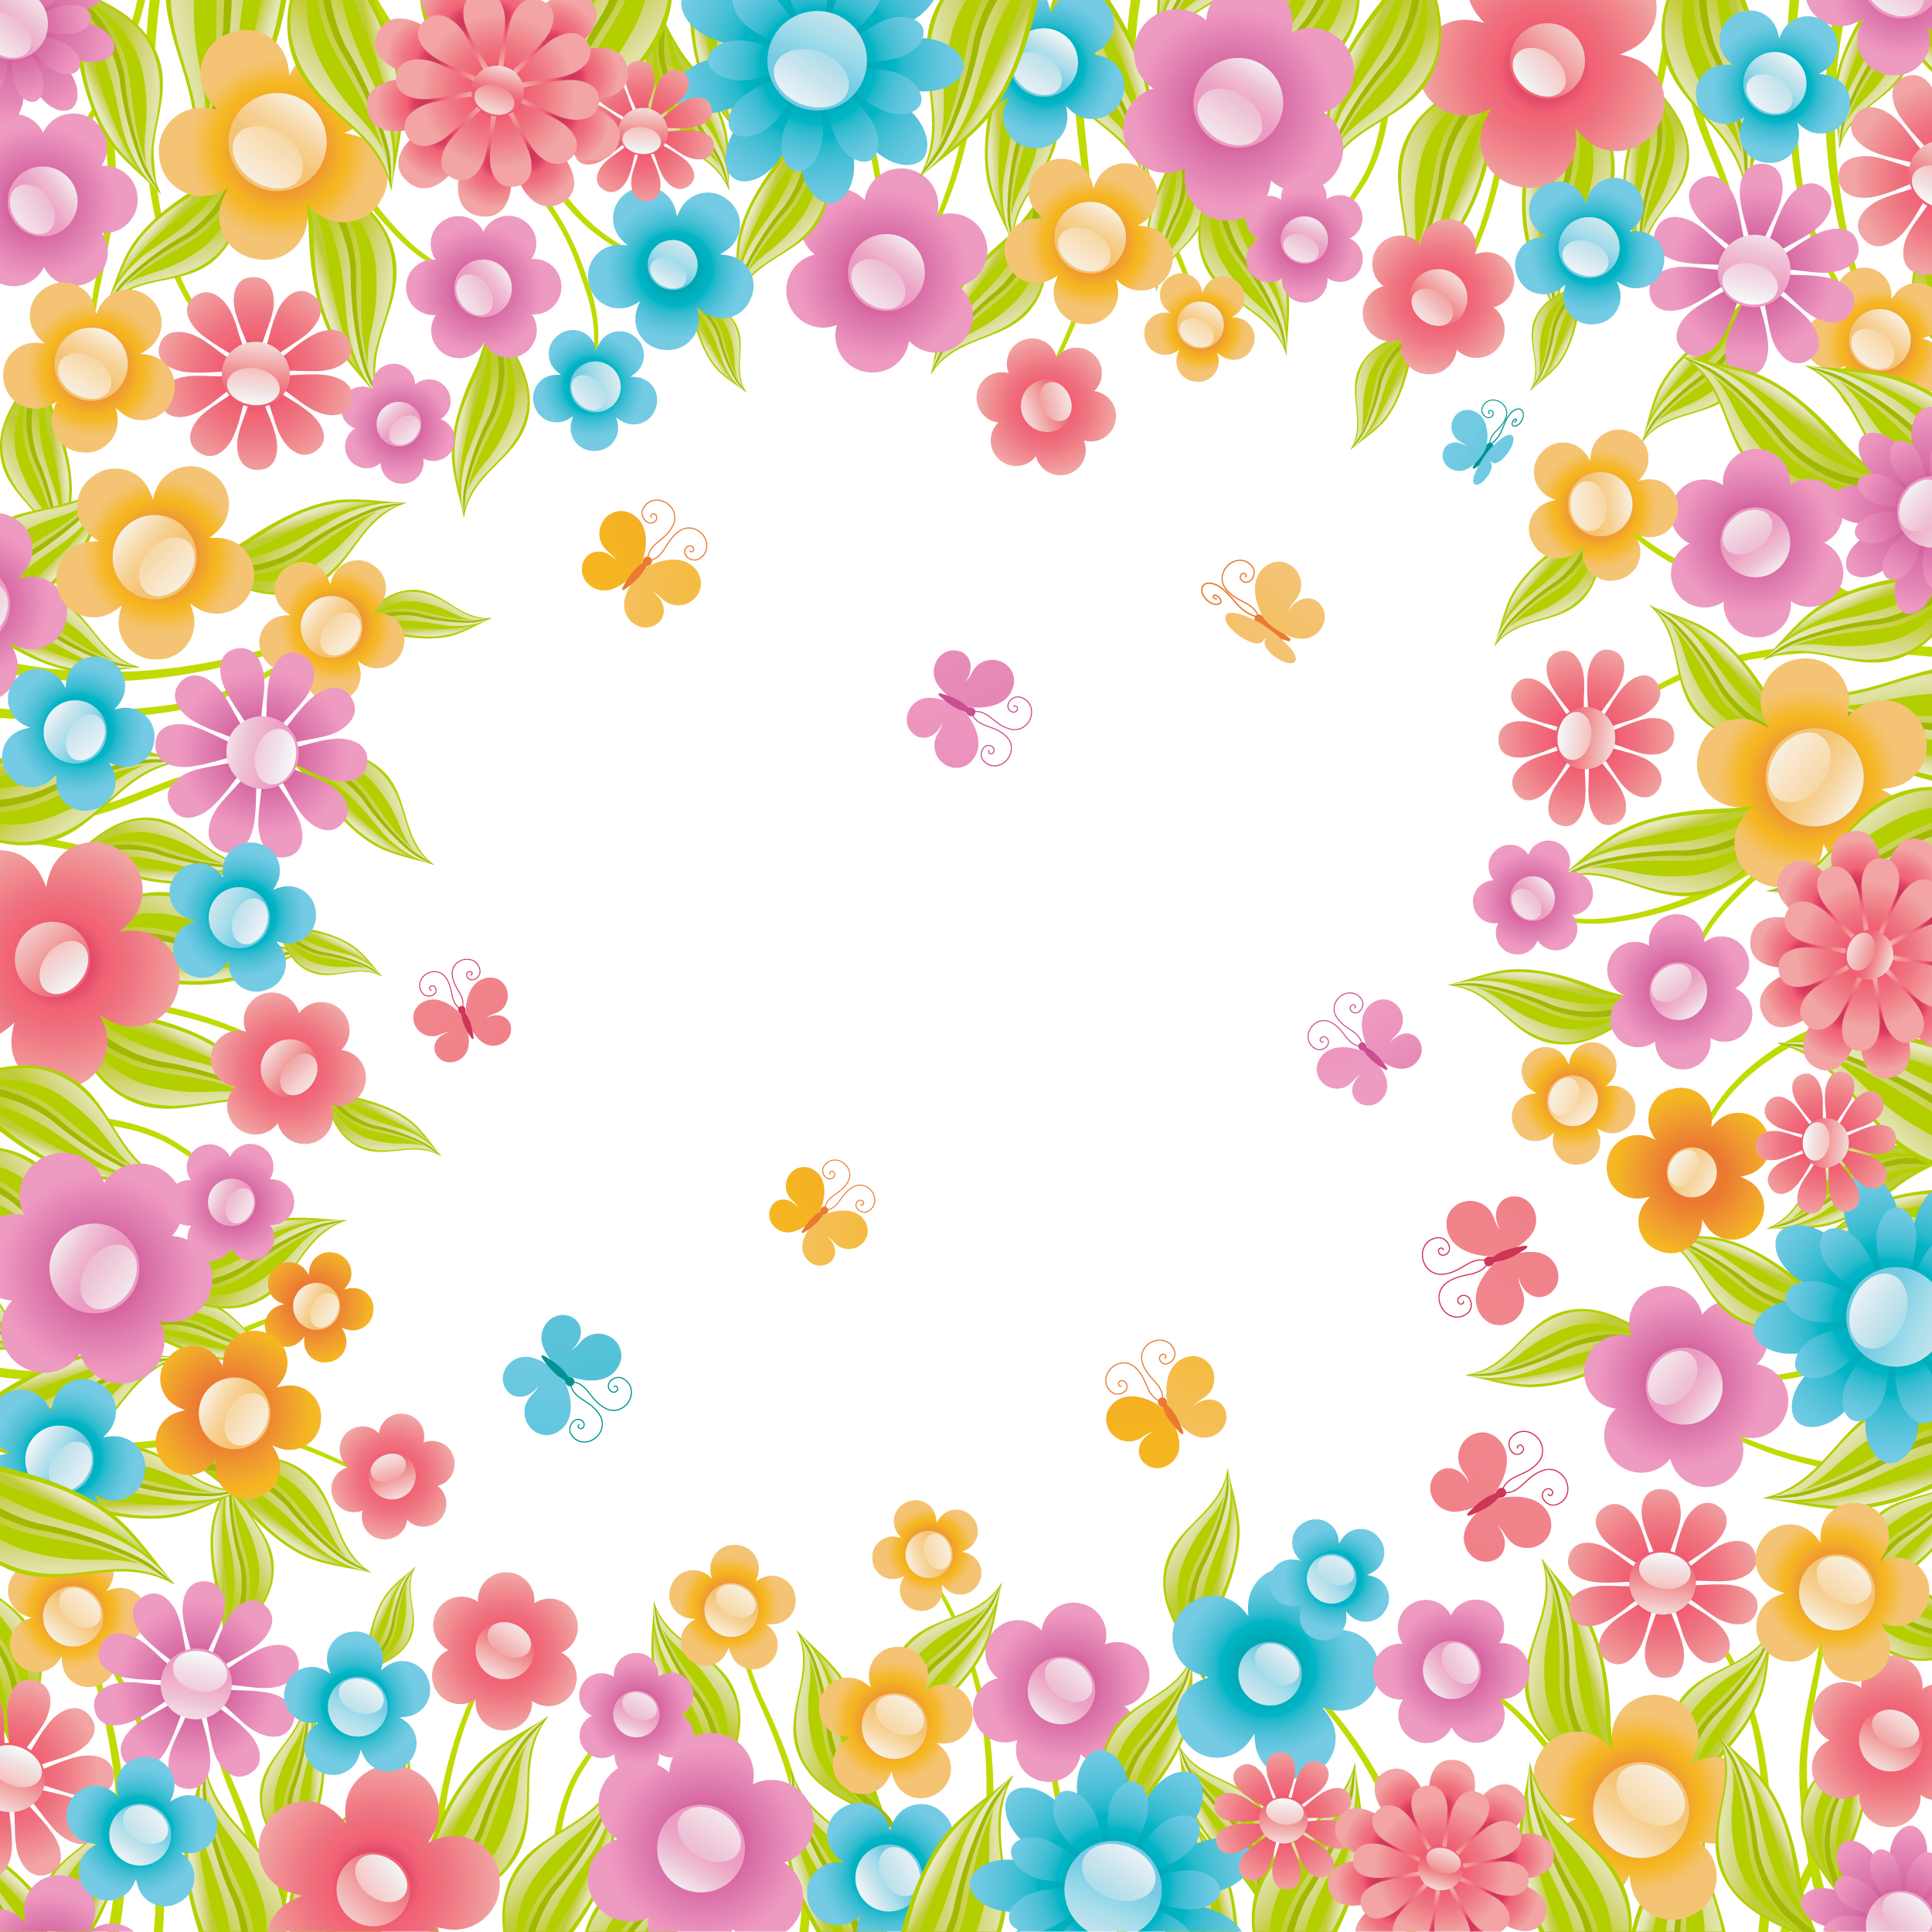 花のイラスト フリー素材 壁紙 背景no 574 カラフル 花畑と蝶